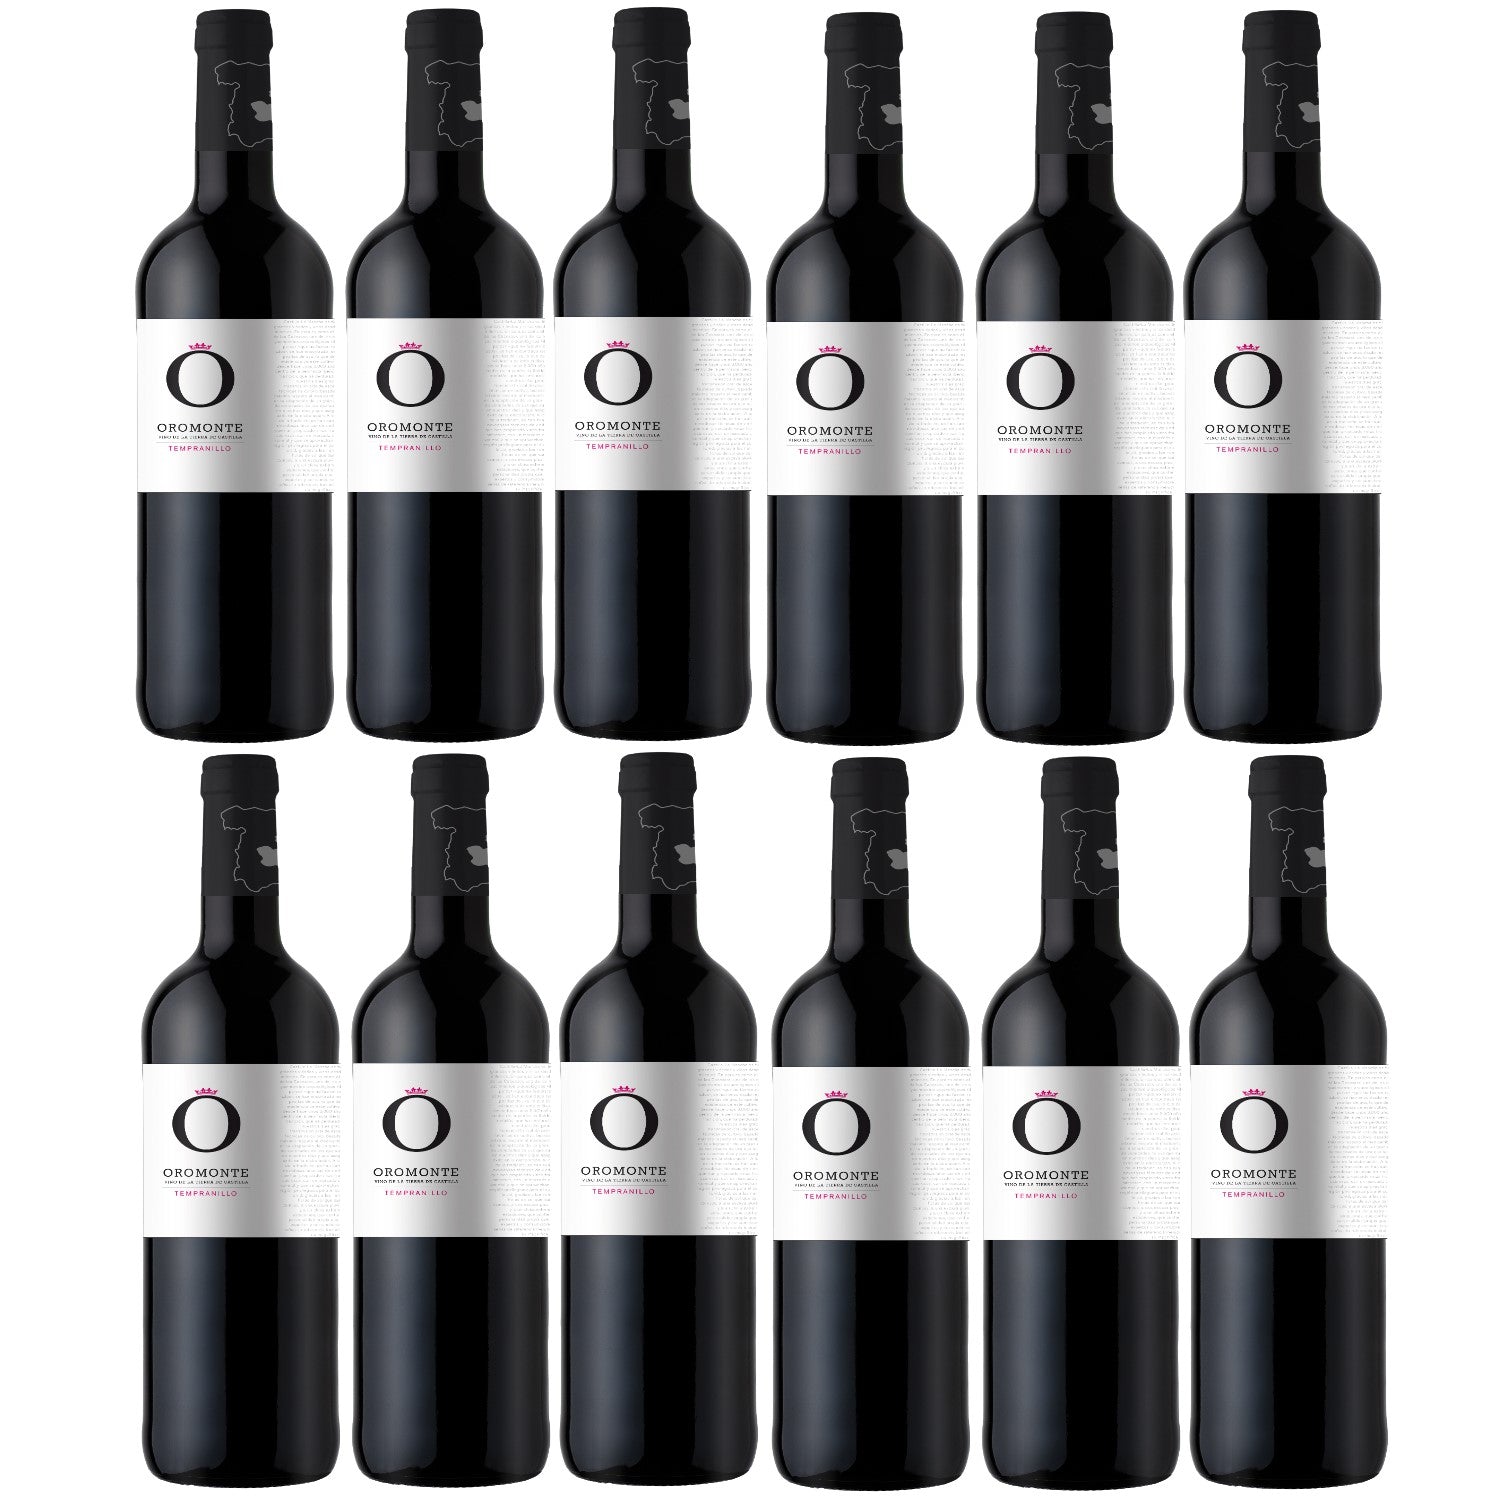 Bodegas Navarro Lopez Oromonte Tempranillo Rotwein Wein trocken Spanien (12 x 0.75l) - Versanel -